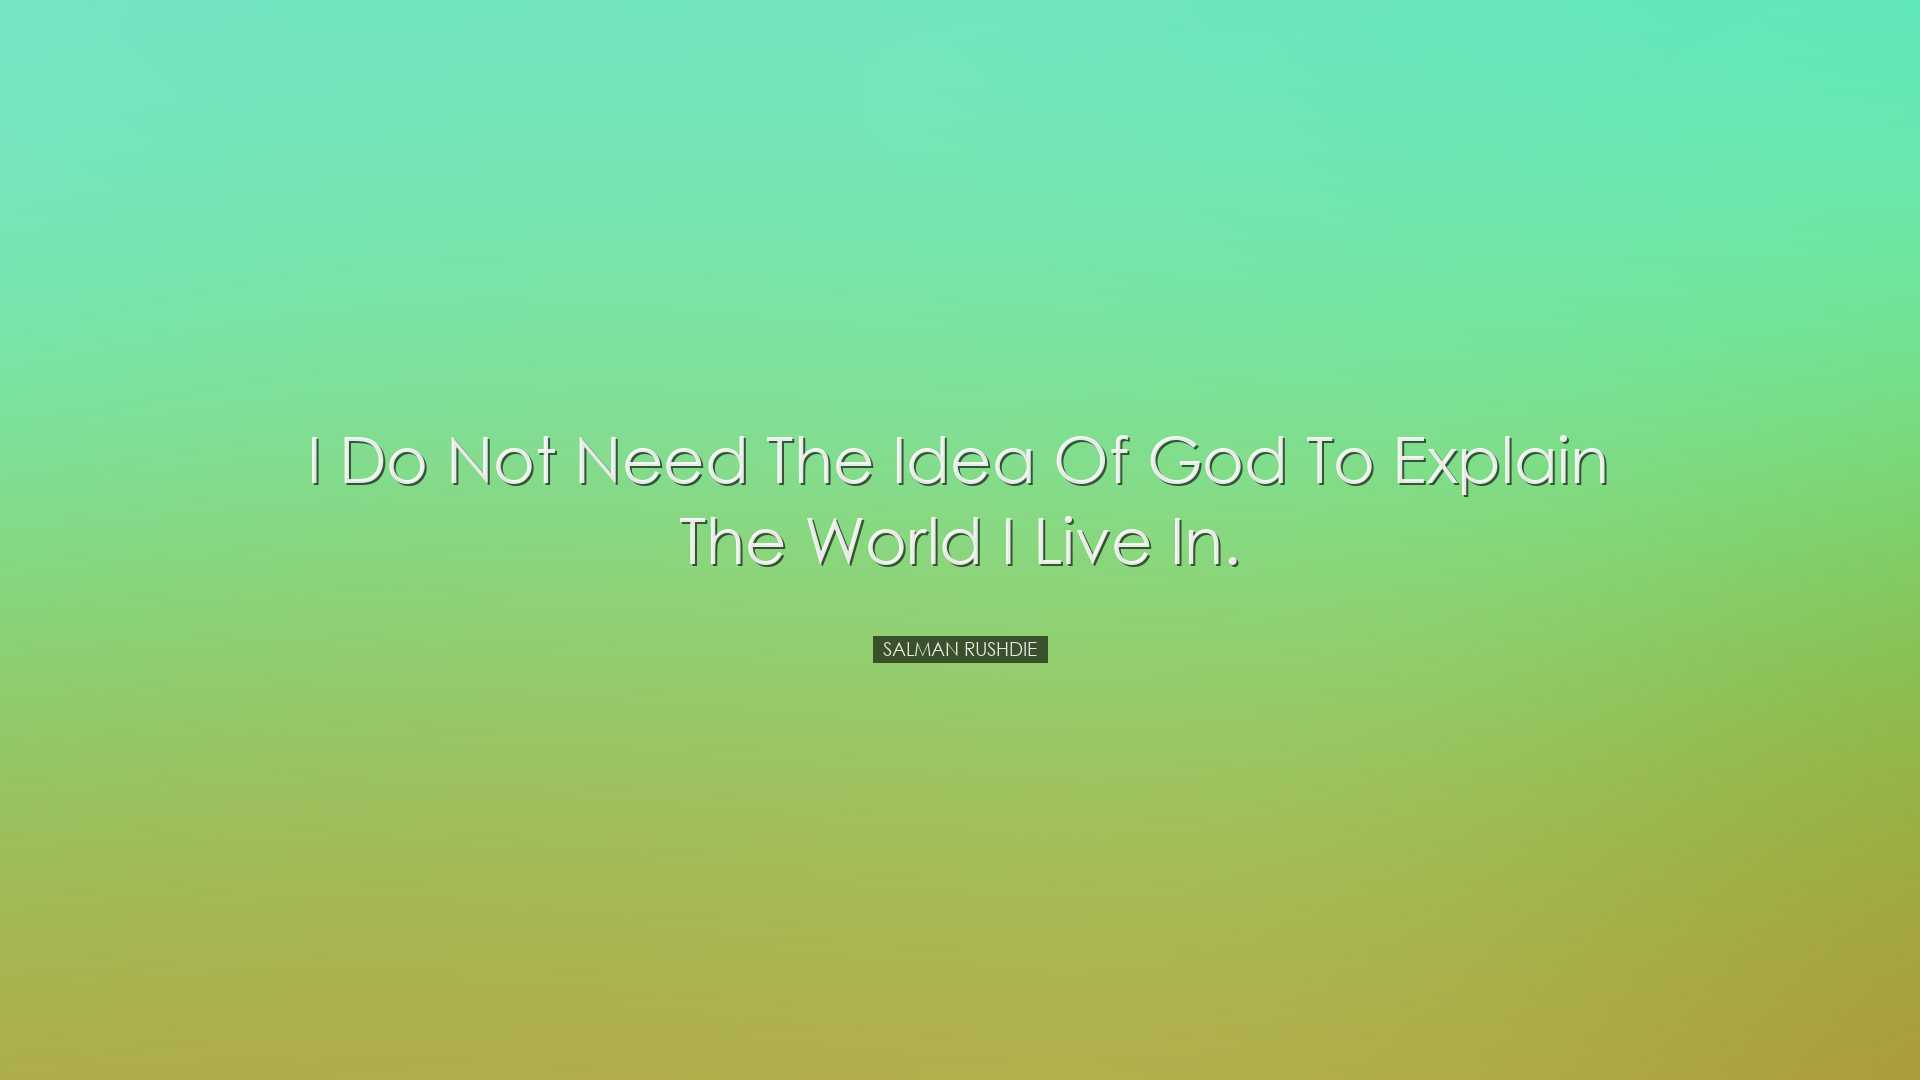 I do not need the idea of God to explain the world I live in. - Sa